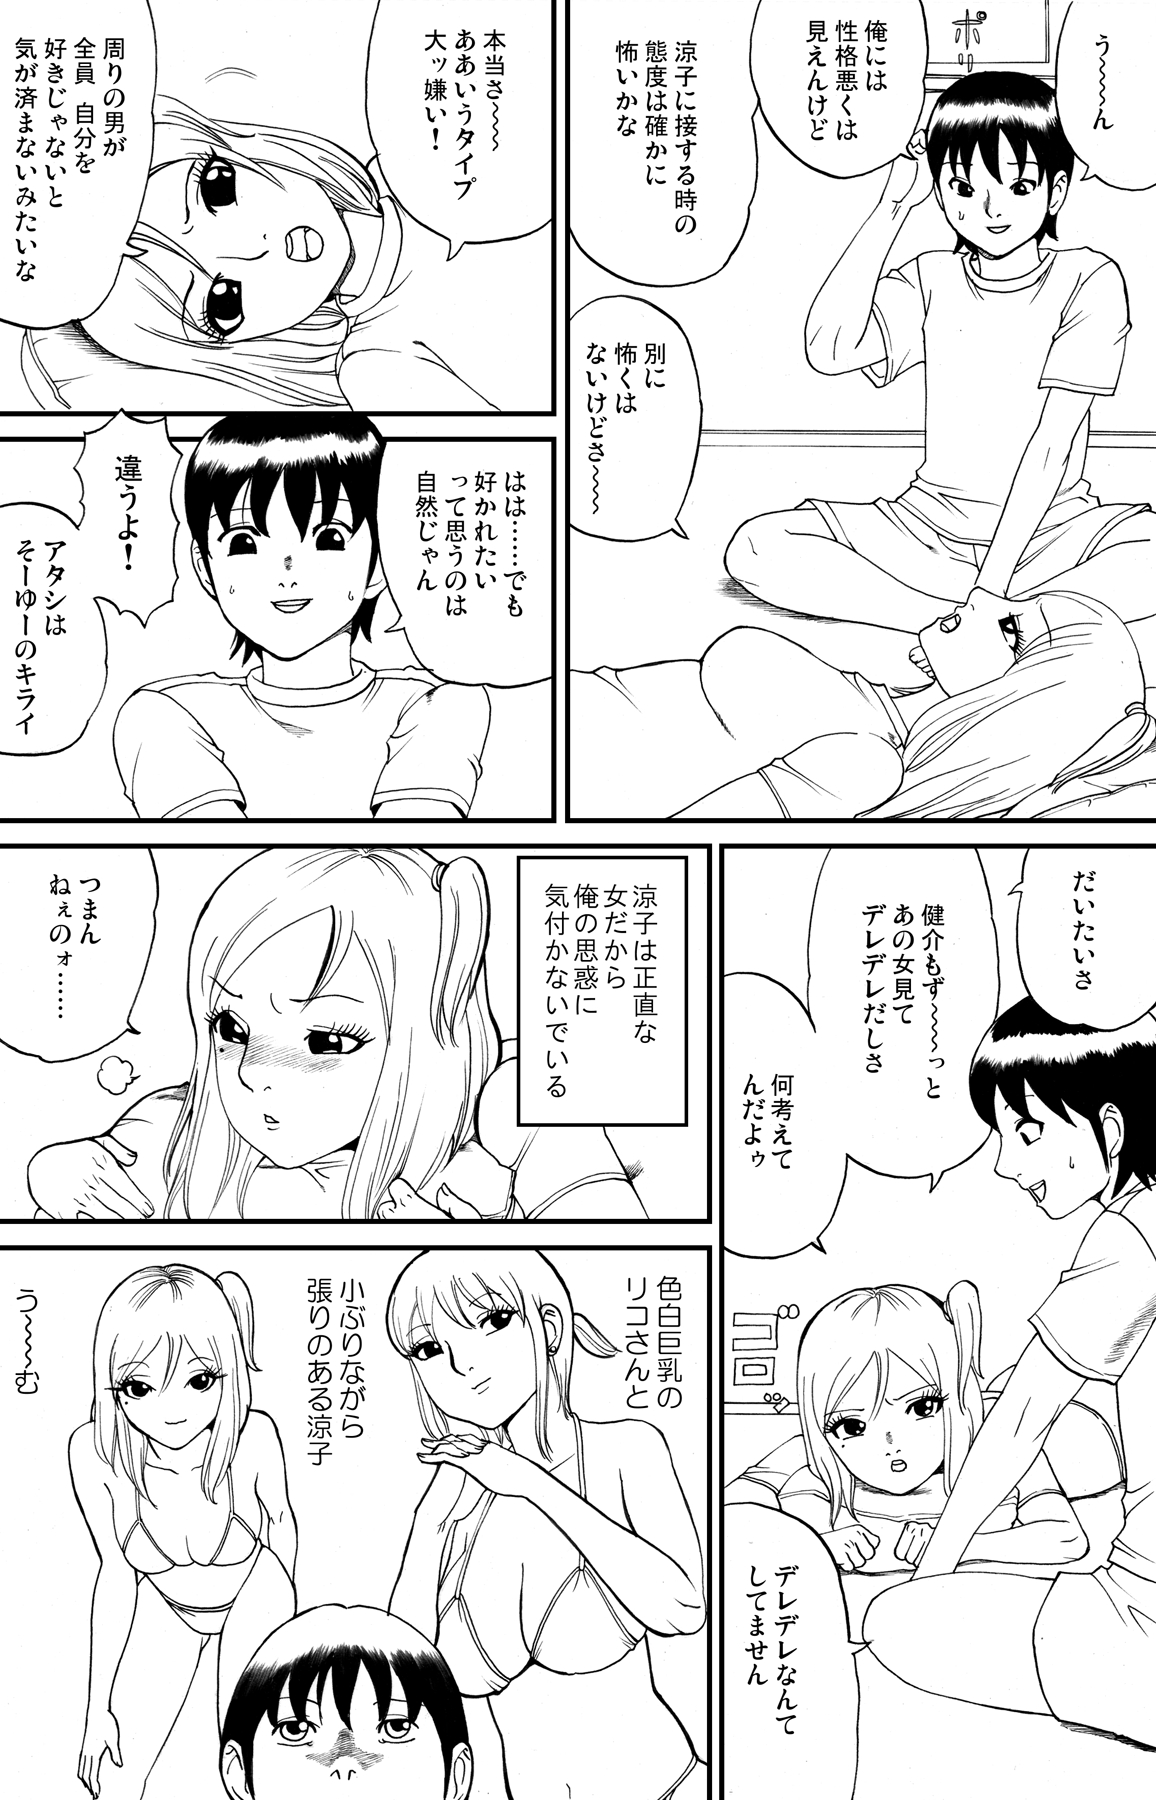 [nekomajin] fuwapoyo page 9 full